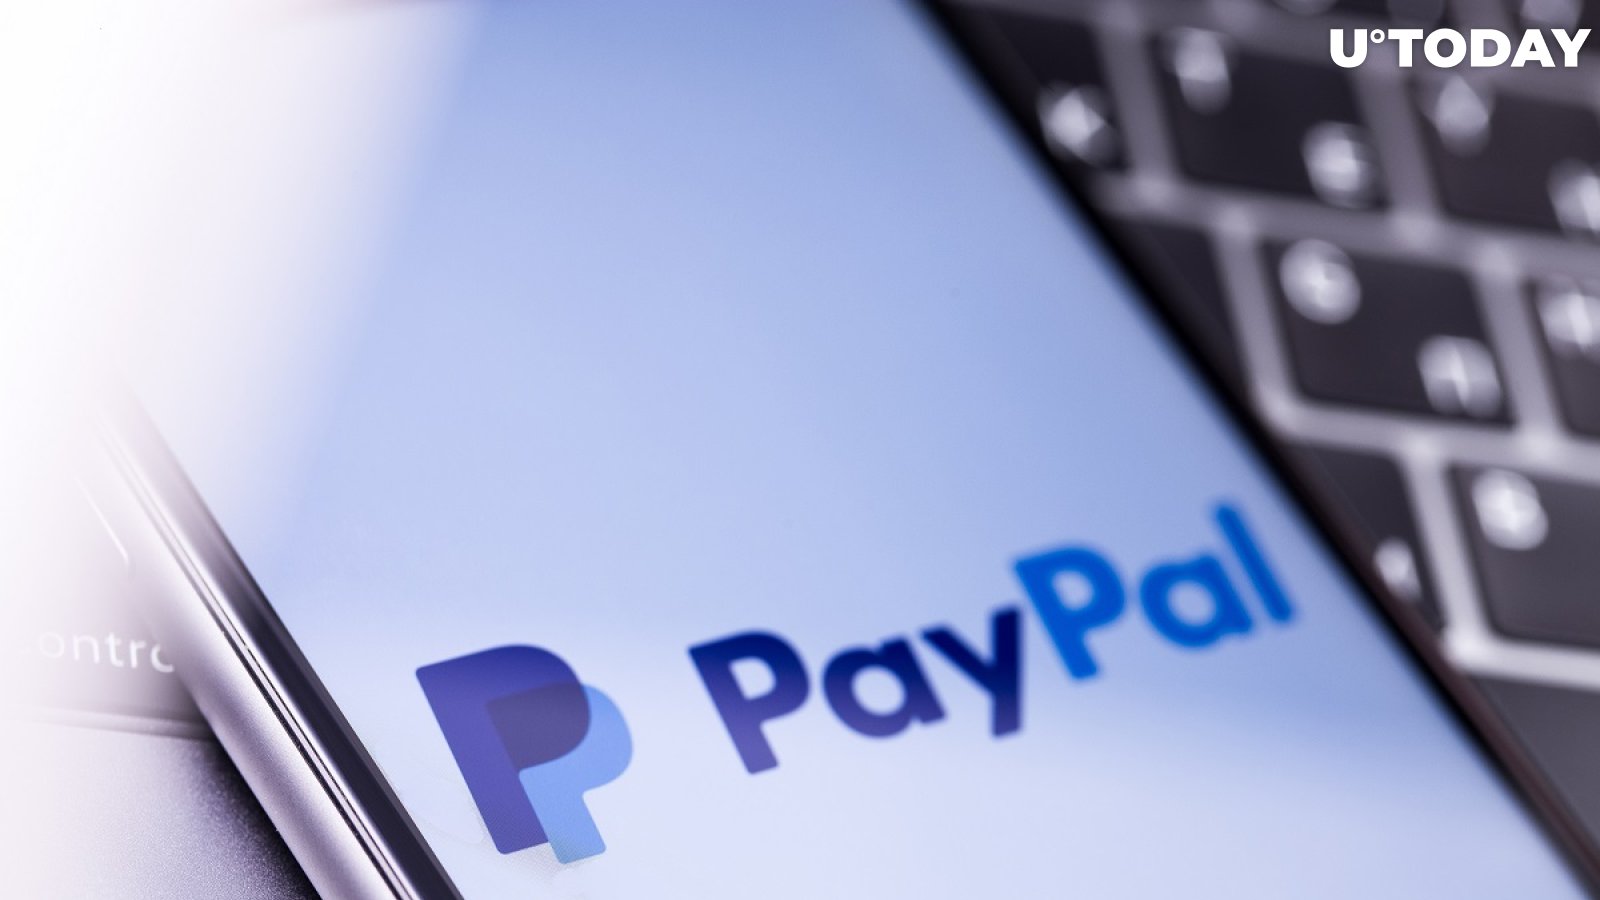 PayPal Confirms Curv Acquisition